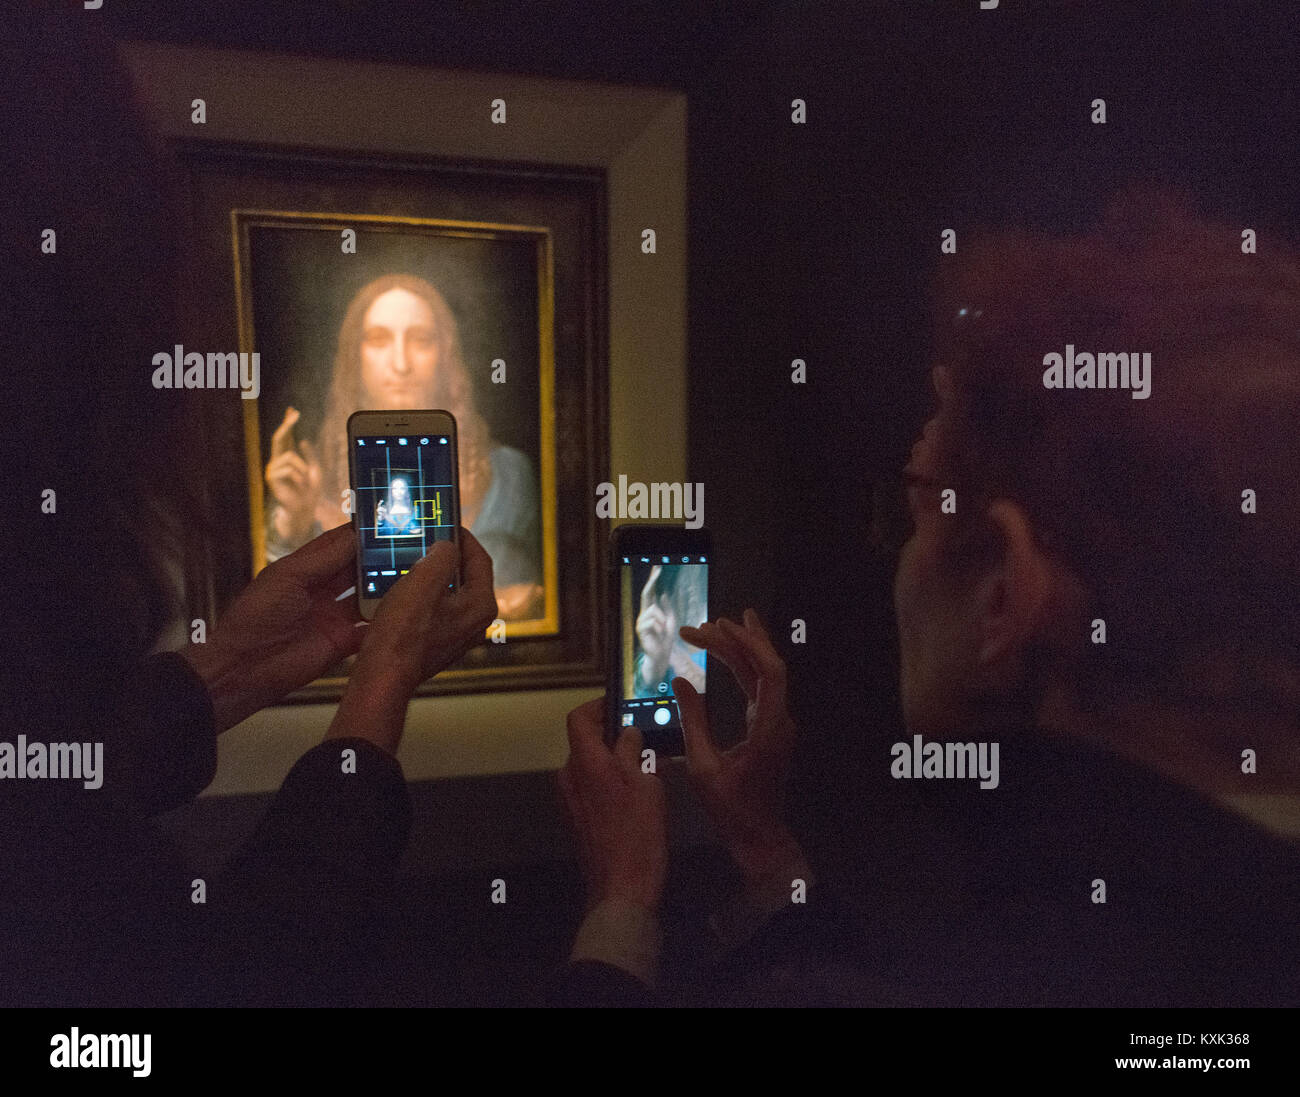 Las personas que toman imagen del Leonardo di Vinci Salvator Mundi en la pantalla de Christie's en la Ciudad de Nueva York antes de que se vendió por $450.3 millones de dólares. Foto de stock